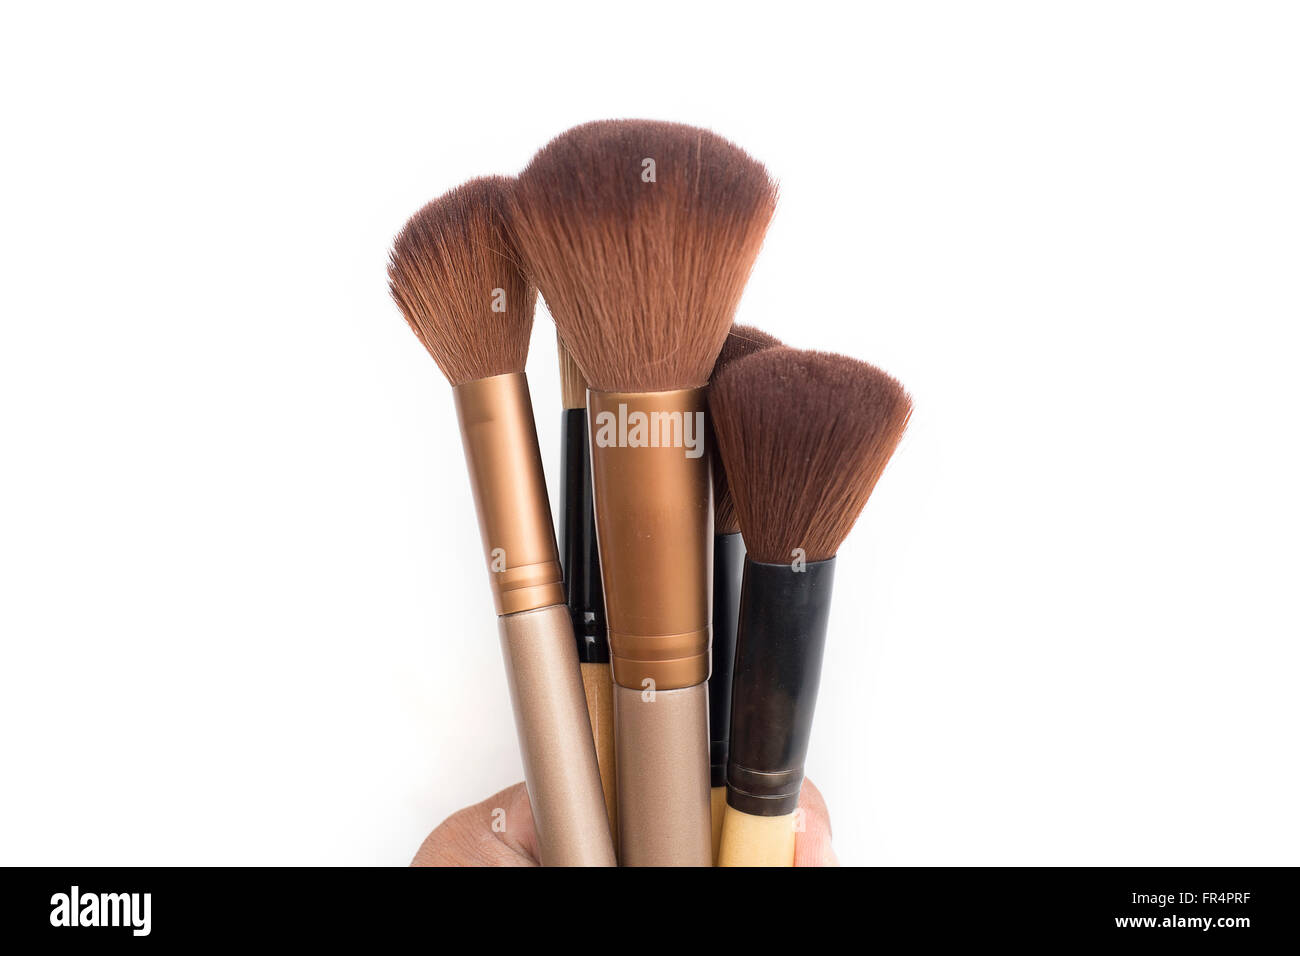 Set of makeup brushes on white background. Stock Photo